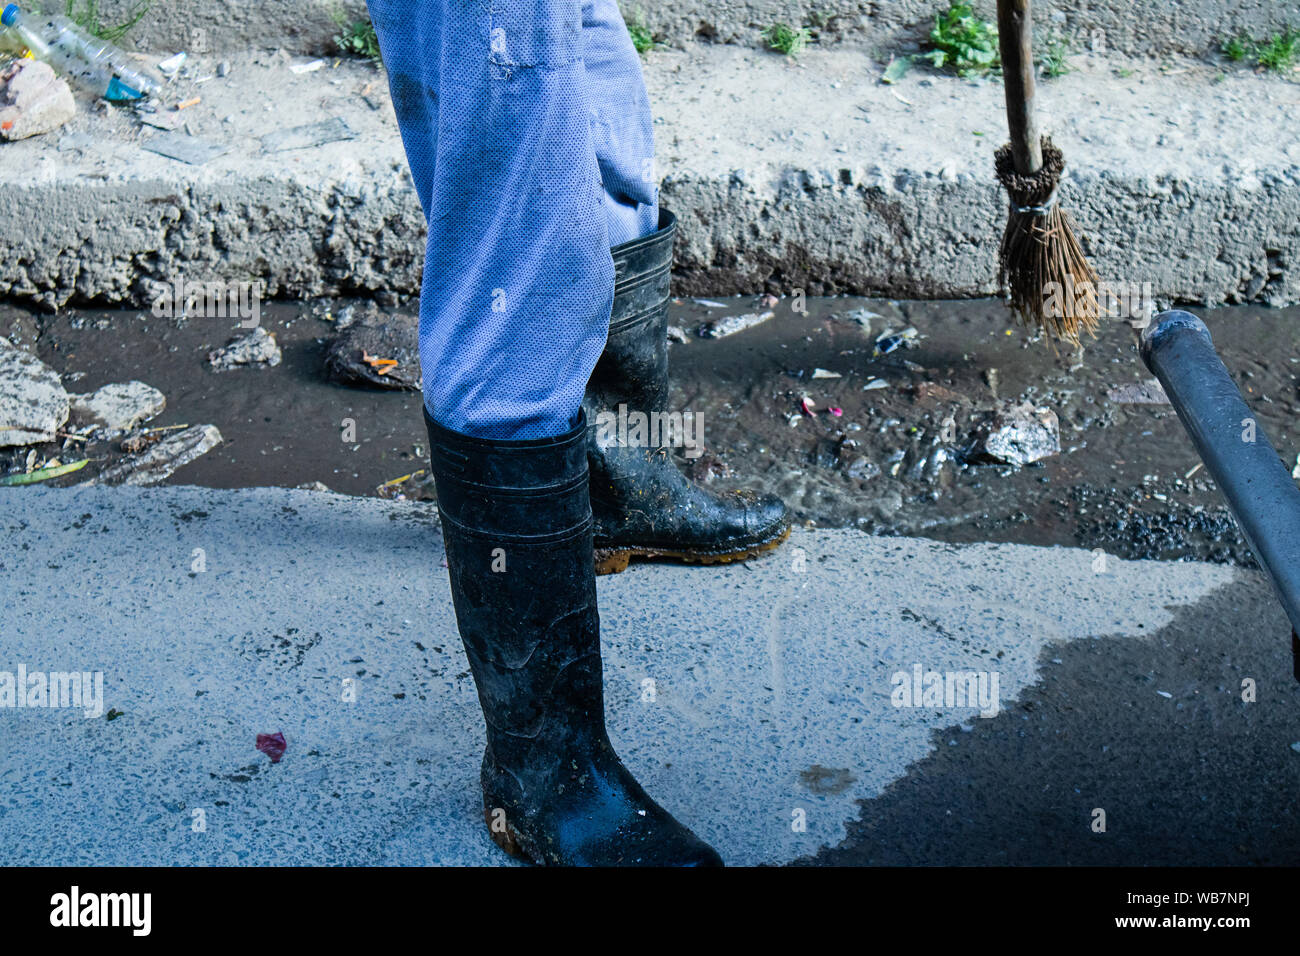 Shimla, Himachal Pradesh, Inde - Juillet 20th, 2019 : employé municipal balayer le système routier et de drainage avec balai et collecte sélective des déchets, l'accent Banque D'Images